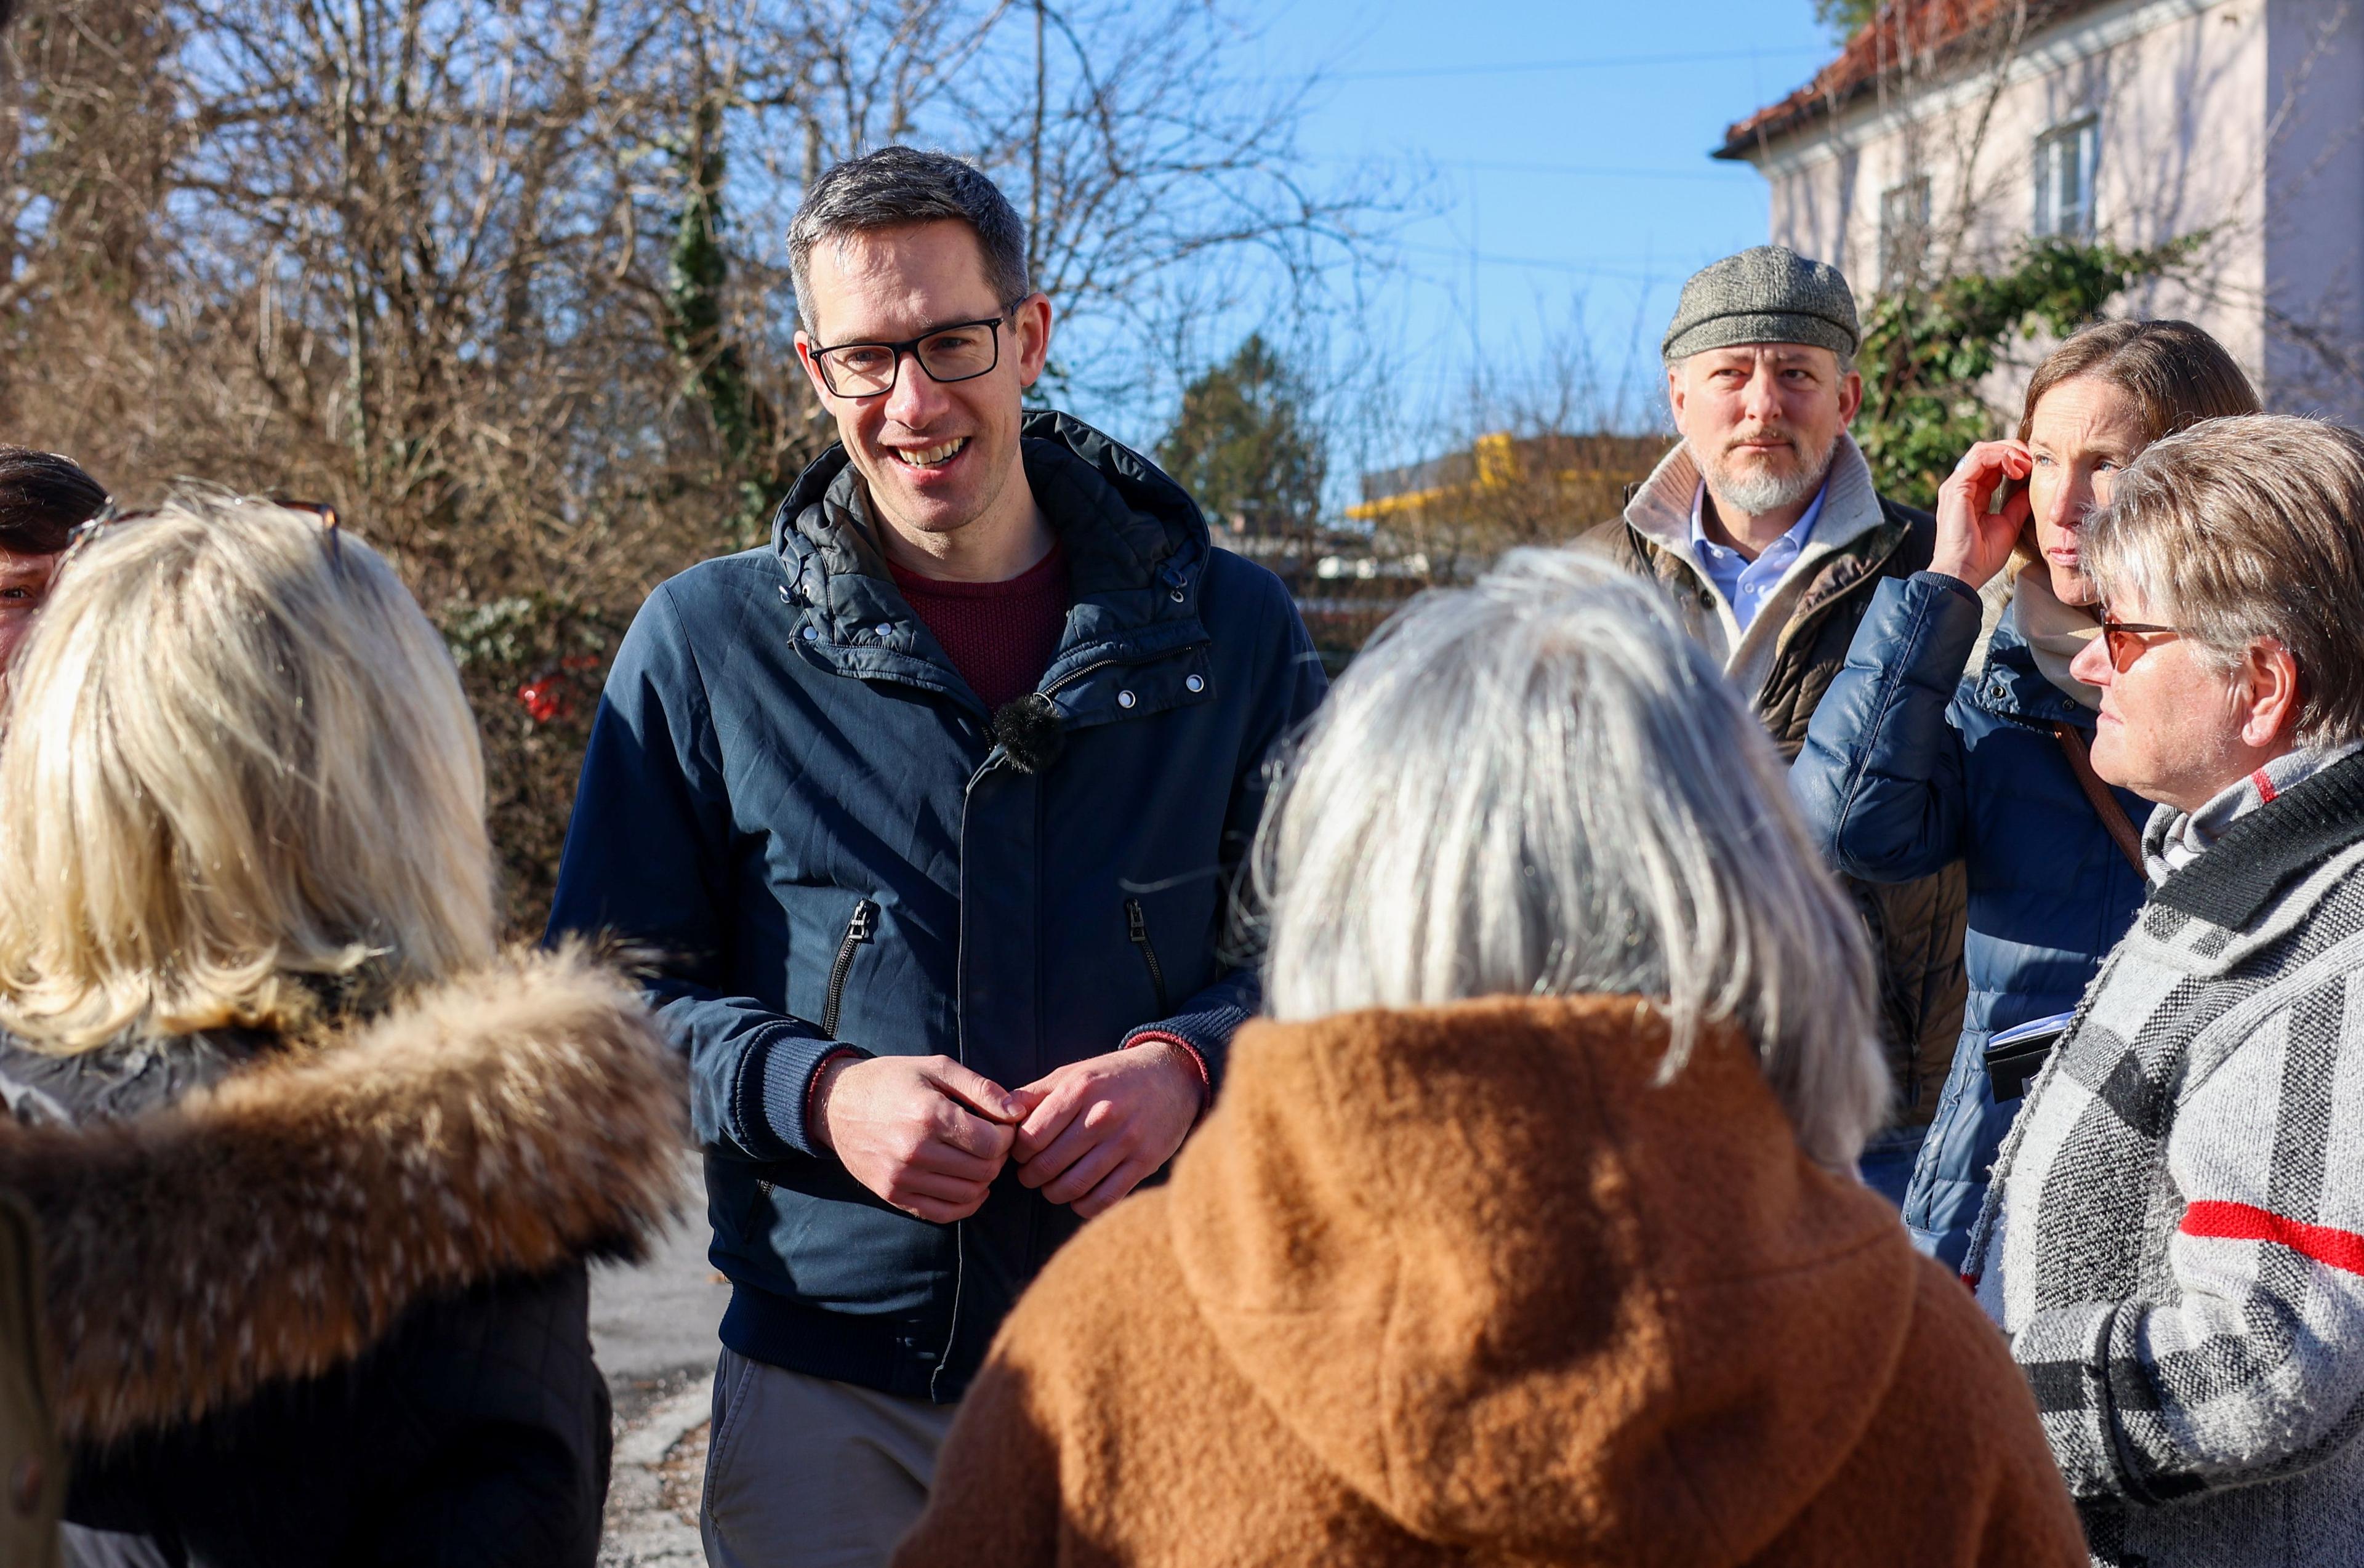 Kay-Michael Dankl, Bürgermeisterkandidat der KPÖ PLUS in Salzburg, beim Wahlkampfauftakt in der Südtiroler Siedlung, wo hunderten gemein­nützigen Wohn­einheiten der Abriss droht.